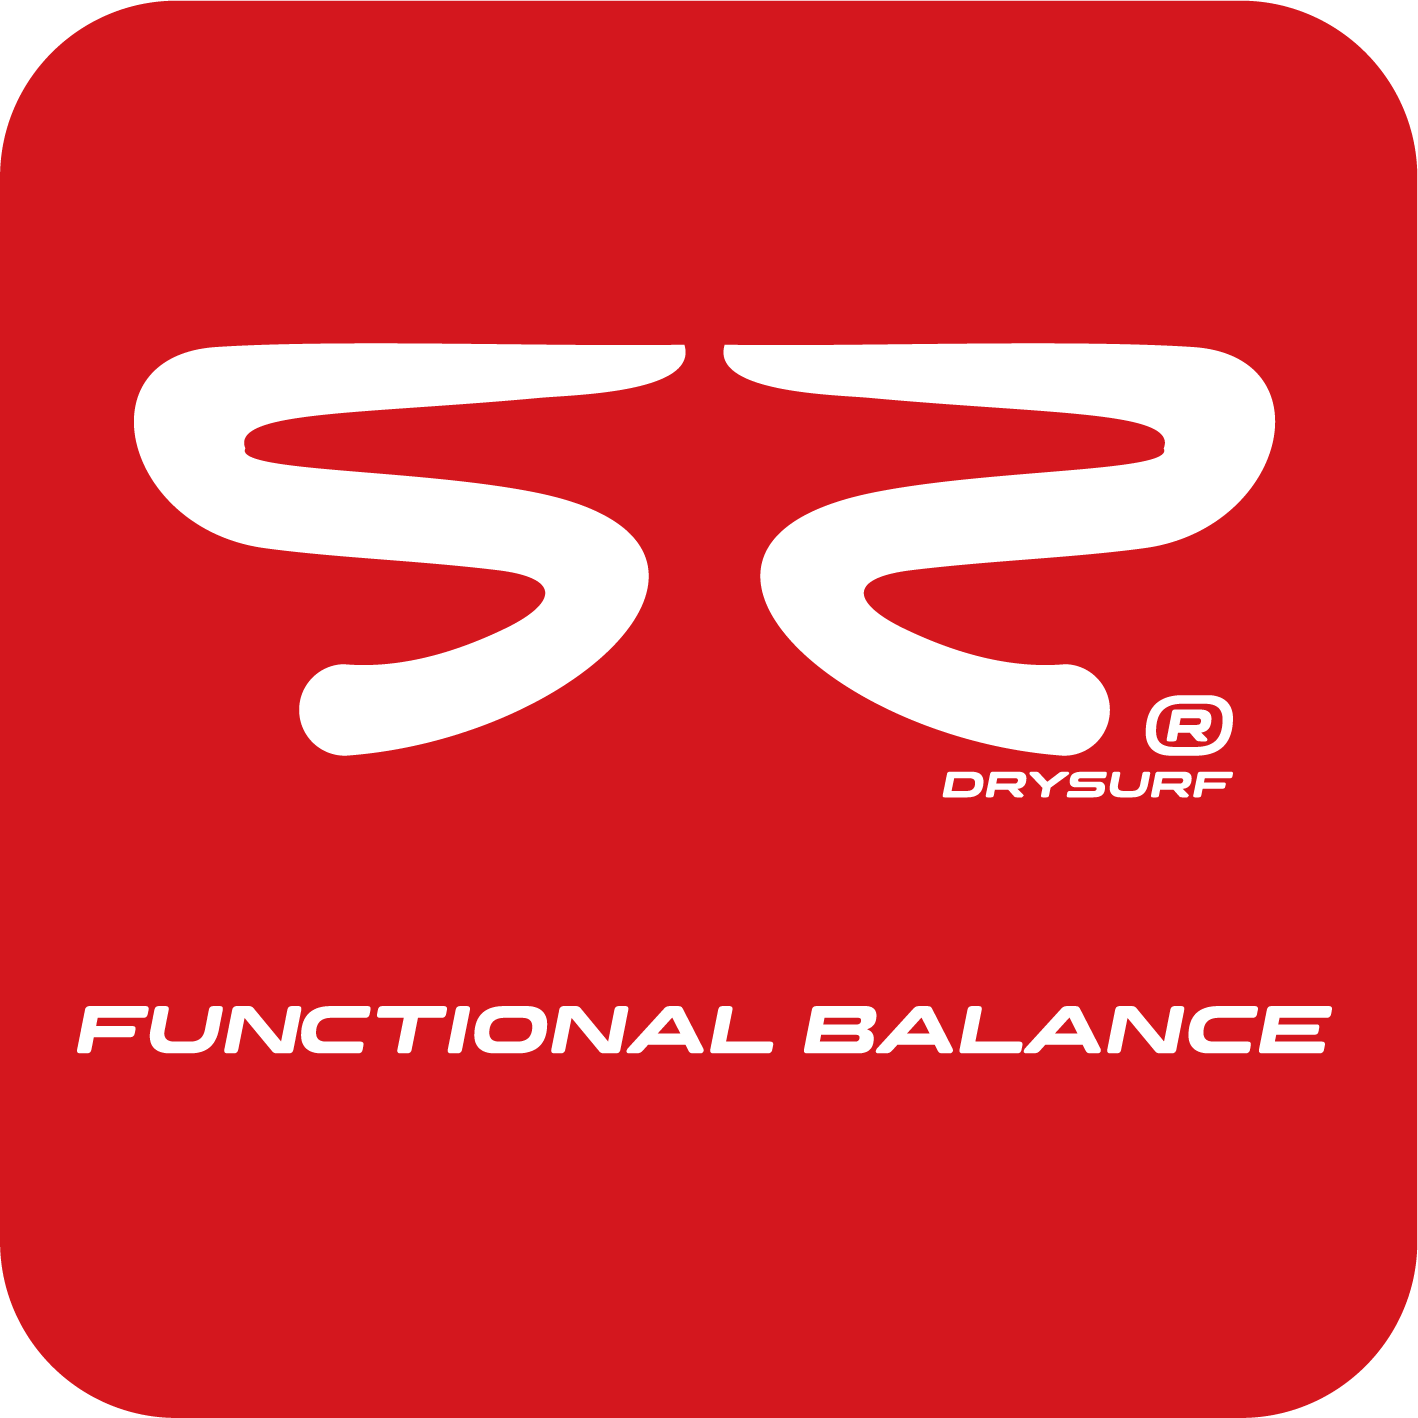 Logotipo Drysurf Training Funcional Balance